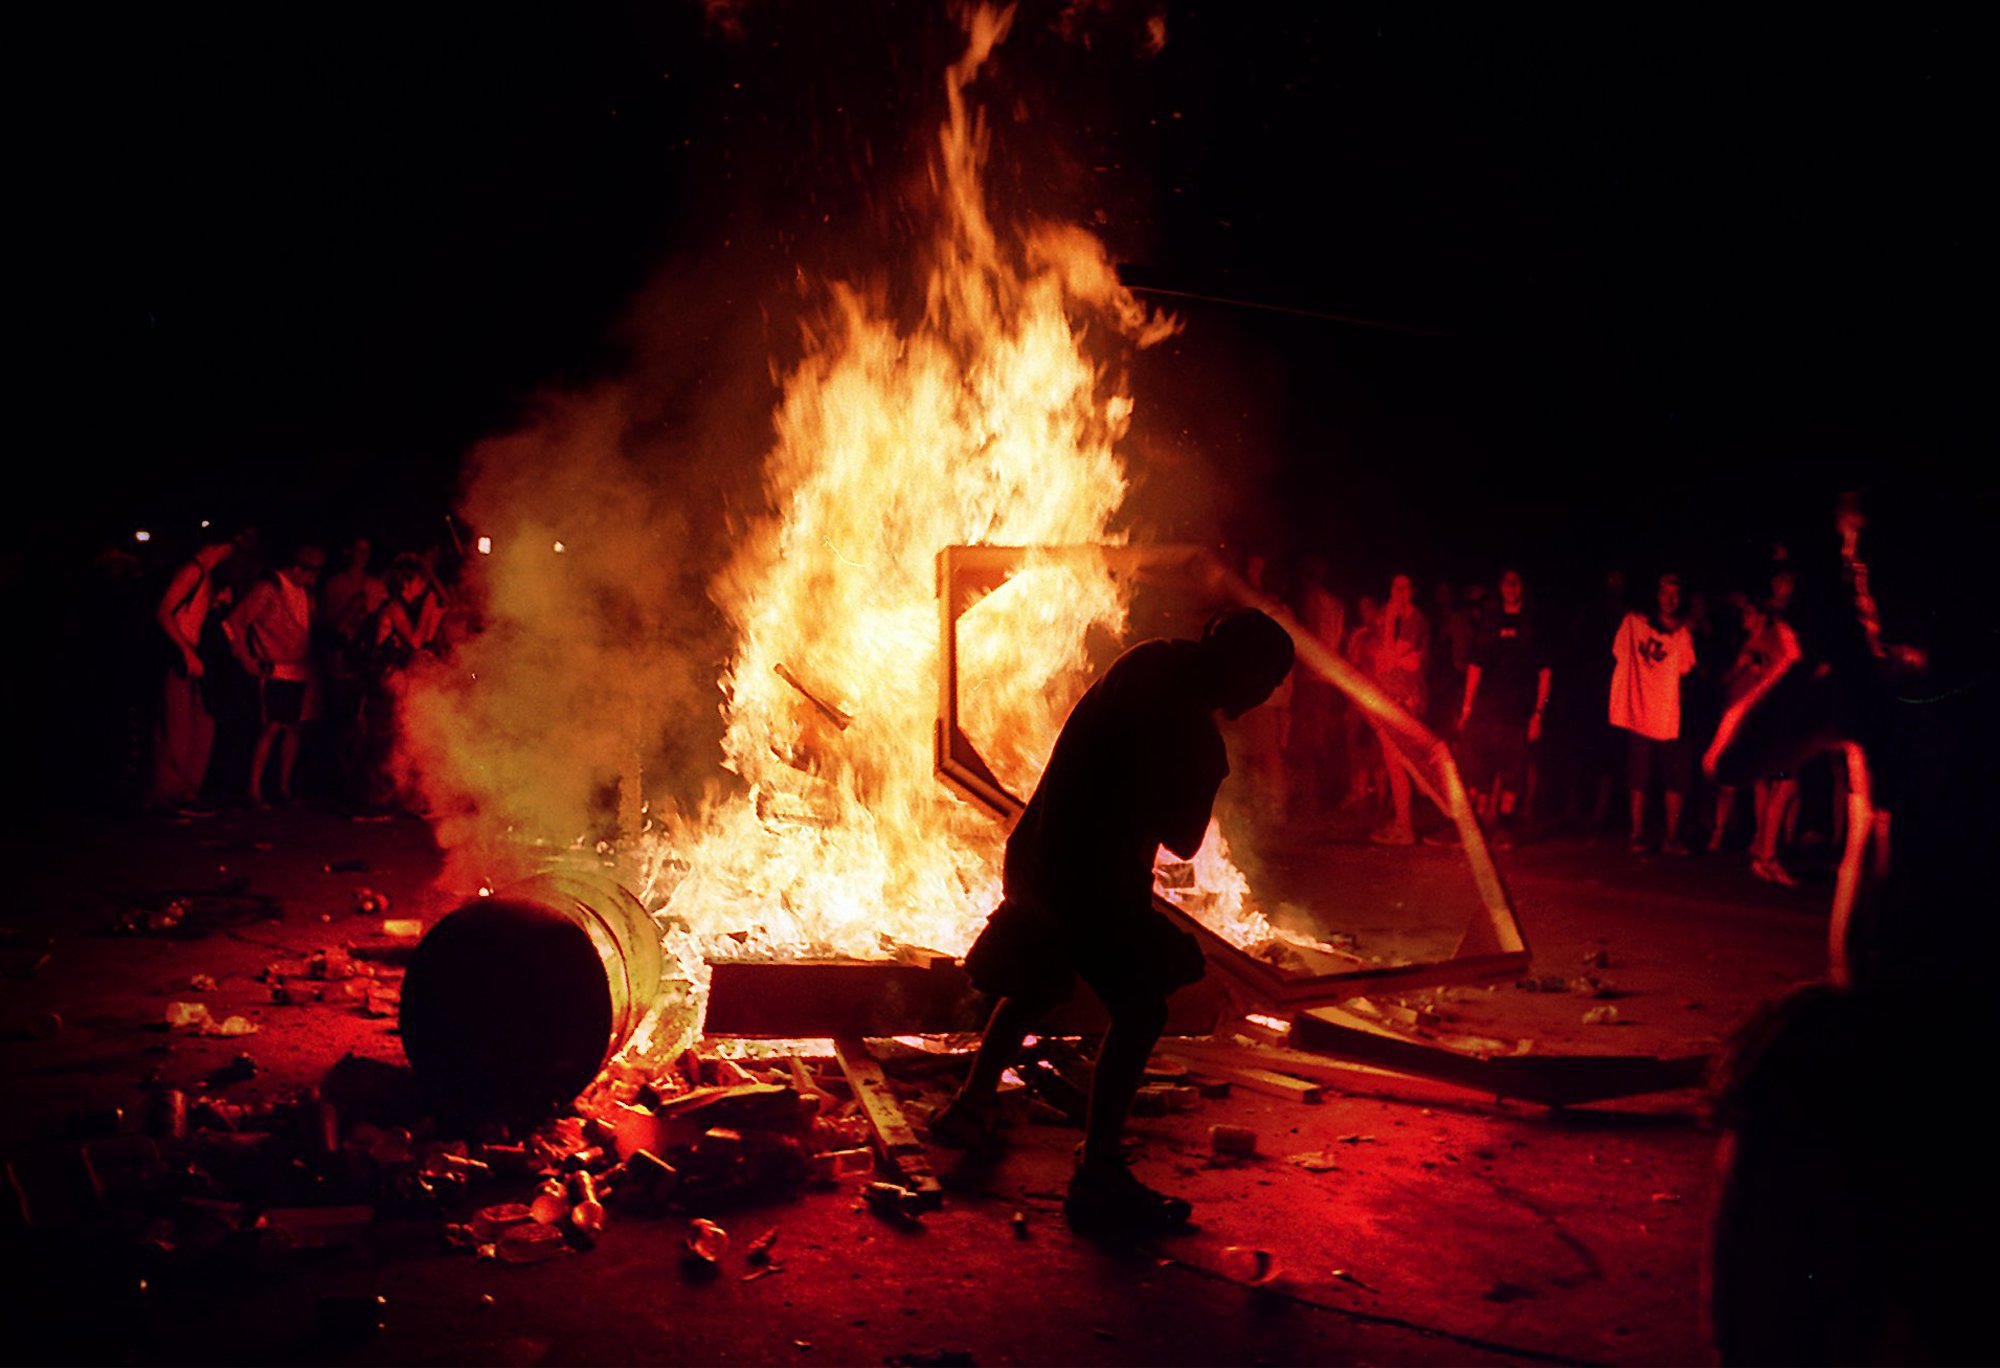 La última noche se produjeron graves disturbios. Se encendieron hogueras en muchos sectores del predio. Los incendios proliferaron (Photo by PH) PL KD BL1999 (Horiz) (At-Risk)